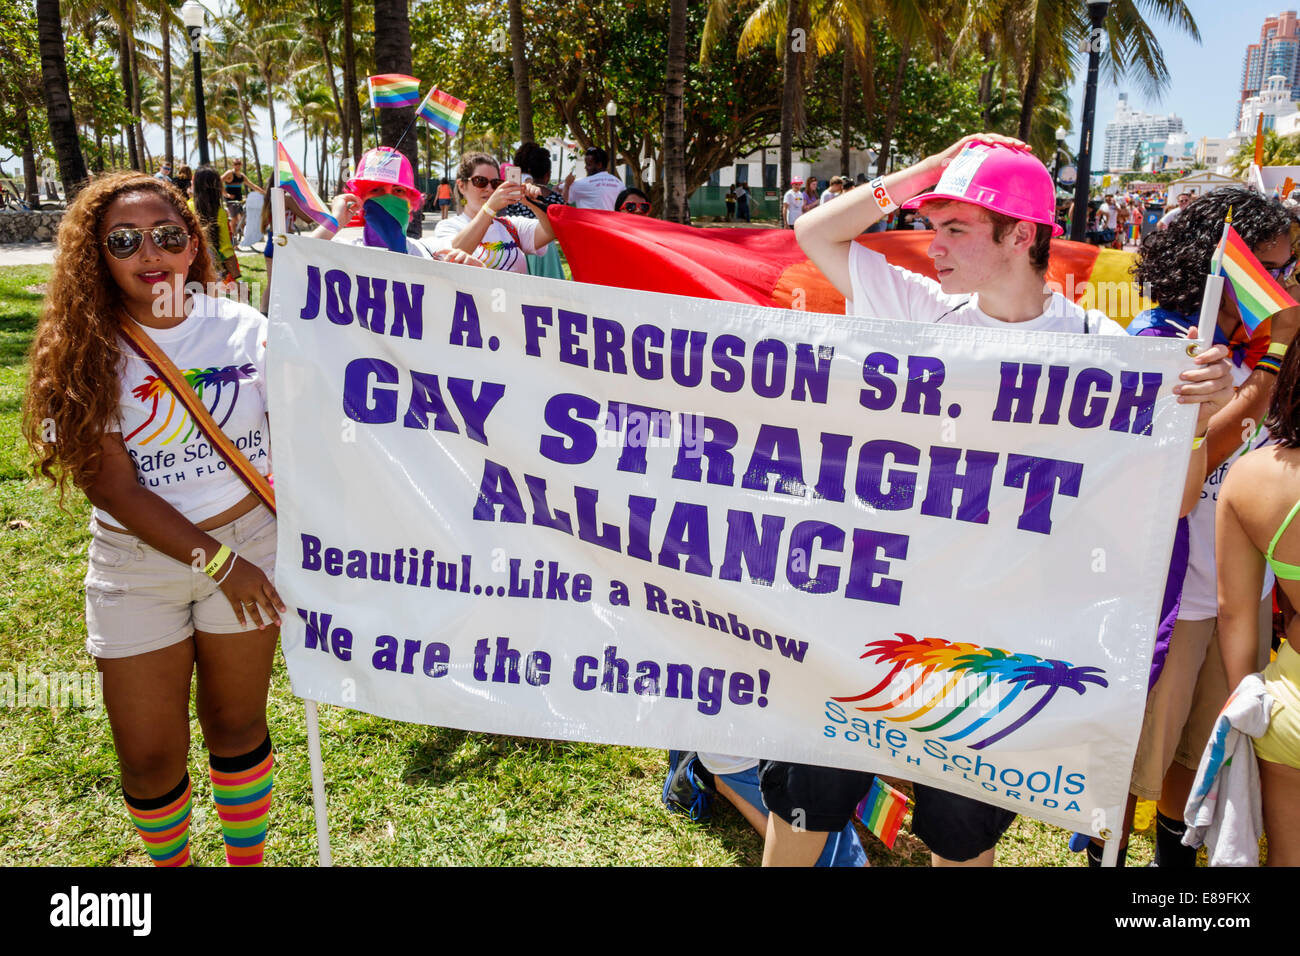 miami-beach-florida-ocean-drive-gay-pride-parade-annual-event-lgbt-E89FKX.jpg